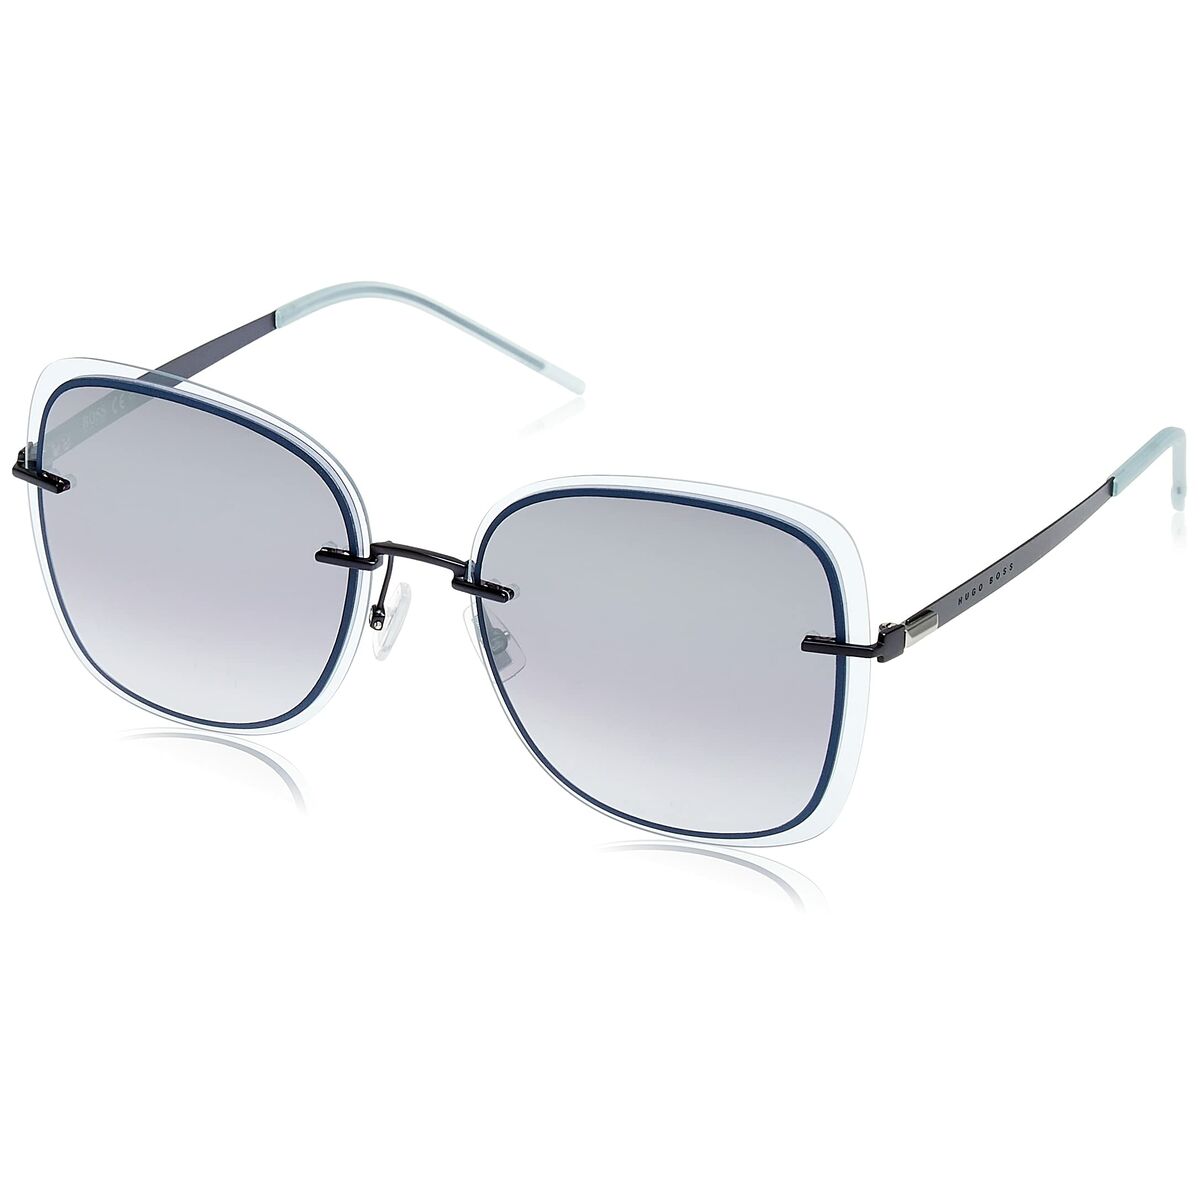 Kaufe Damensonnenbrille Hugo Boss 1167/S ø 57 mm Blau bei AWK Flagship um € 85.00